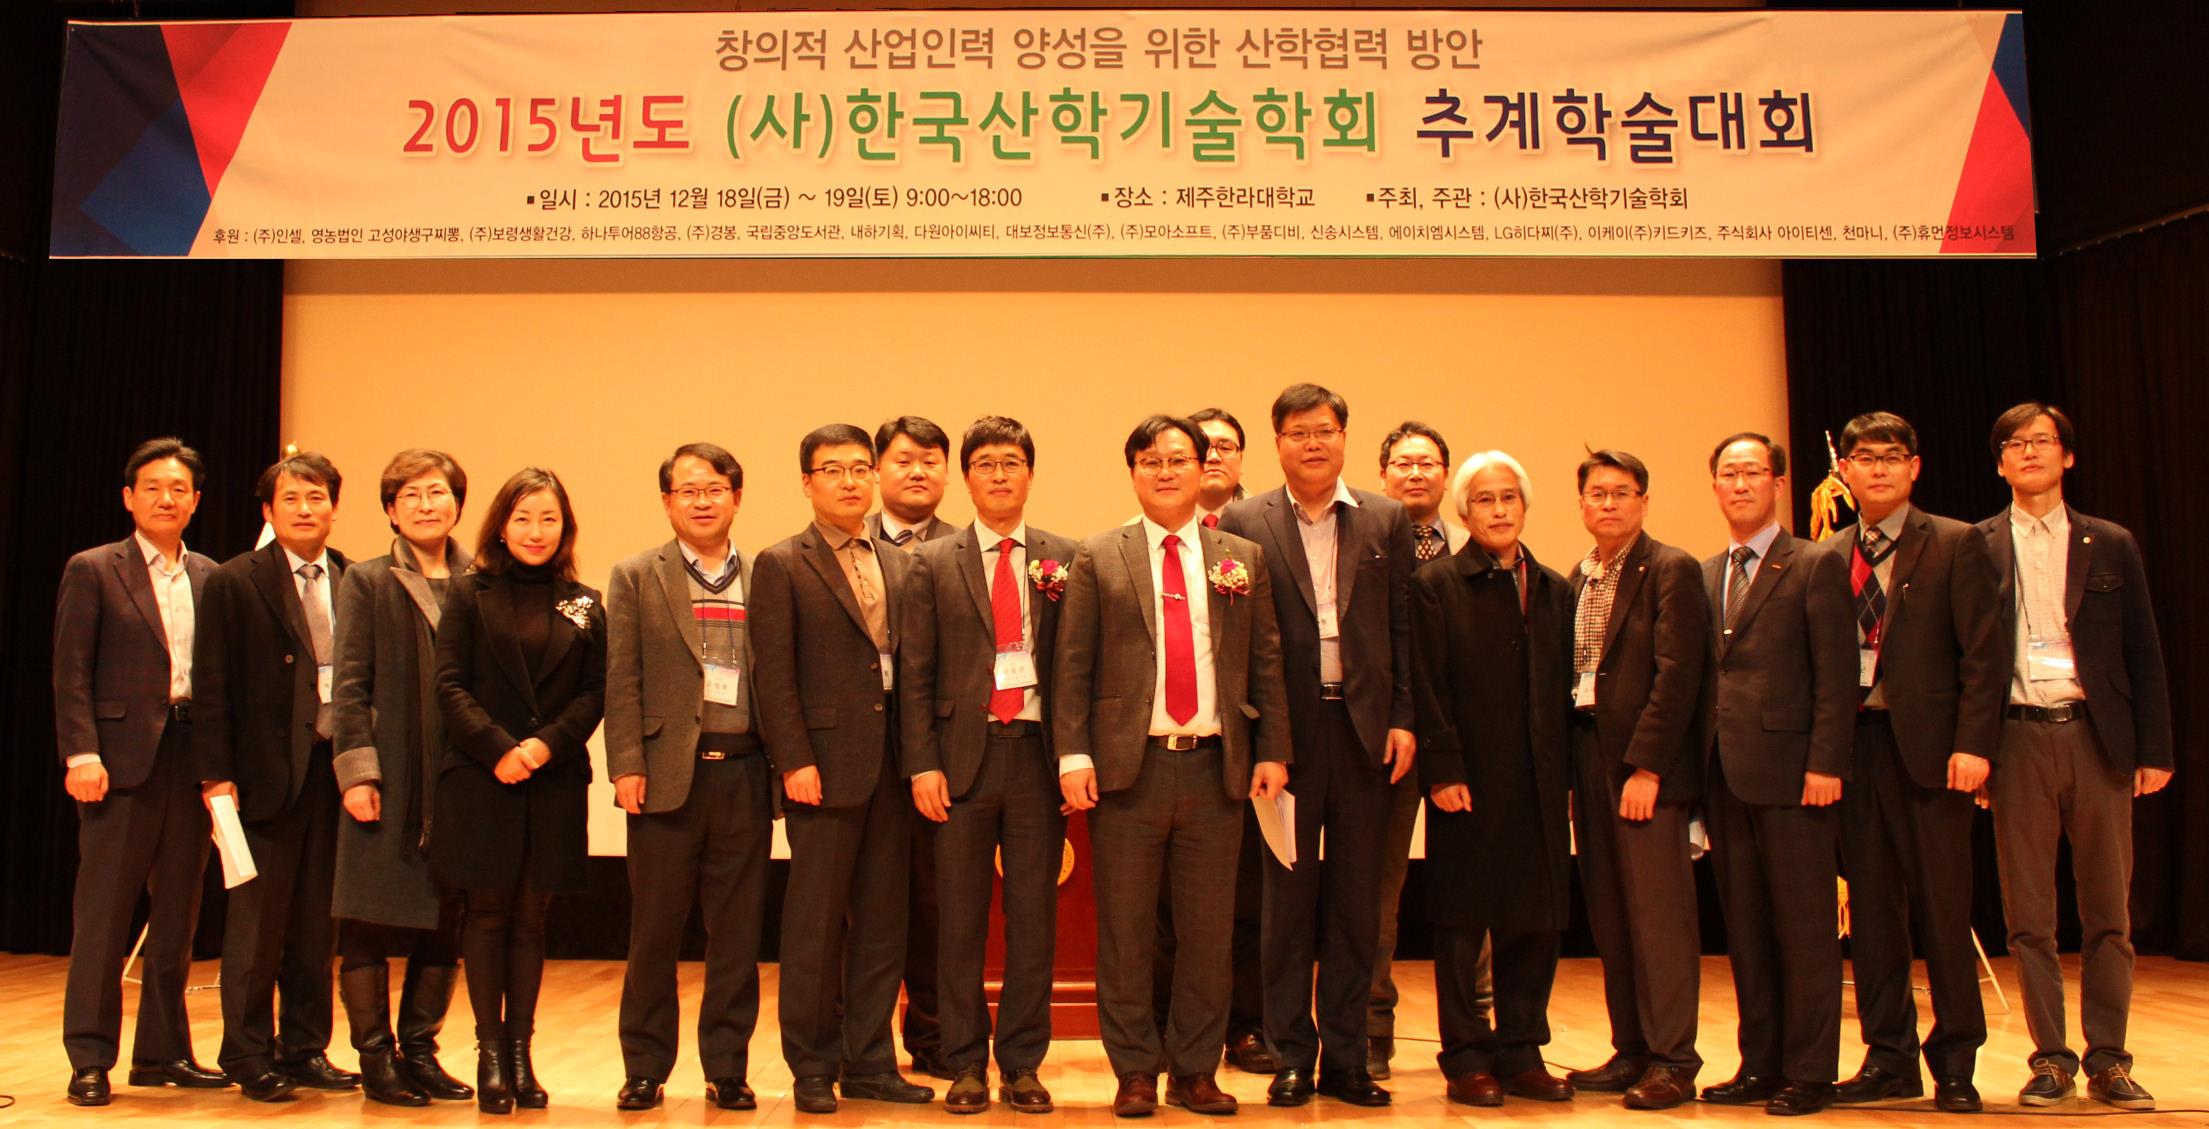 한국산학기술협회 주최 “2015년 추계학술대회”가 지난 18일부터 19일까지 제주한라대학교에서 개최됐다. 대회를 마친 후 찍은 단체사진 모습.